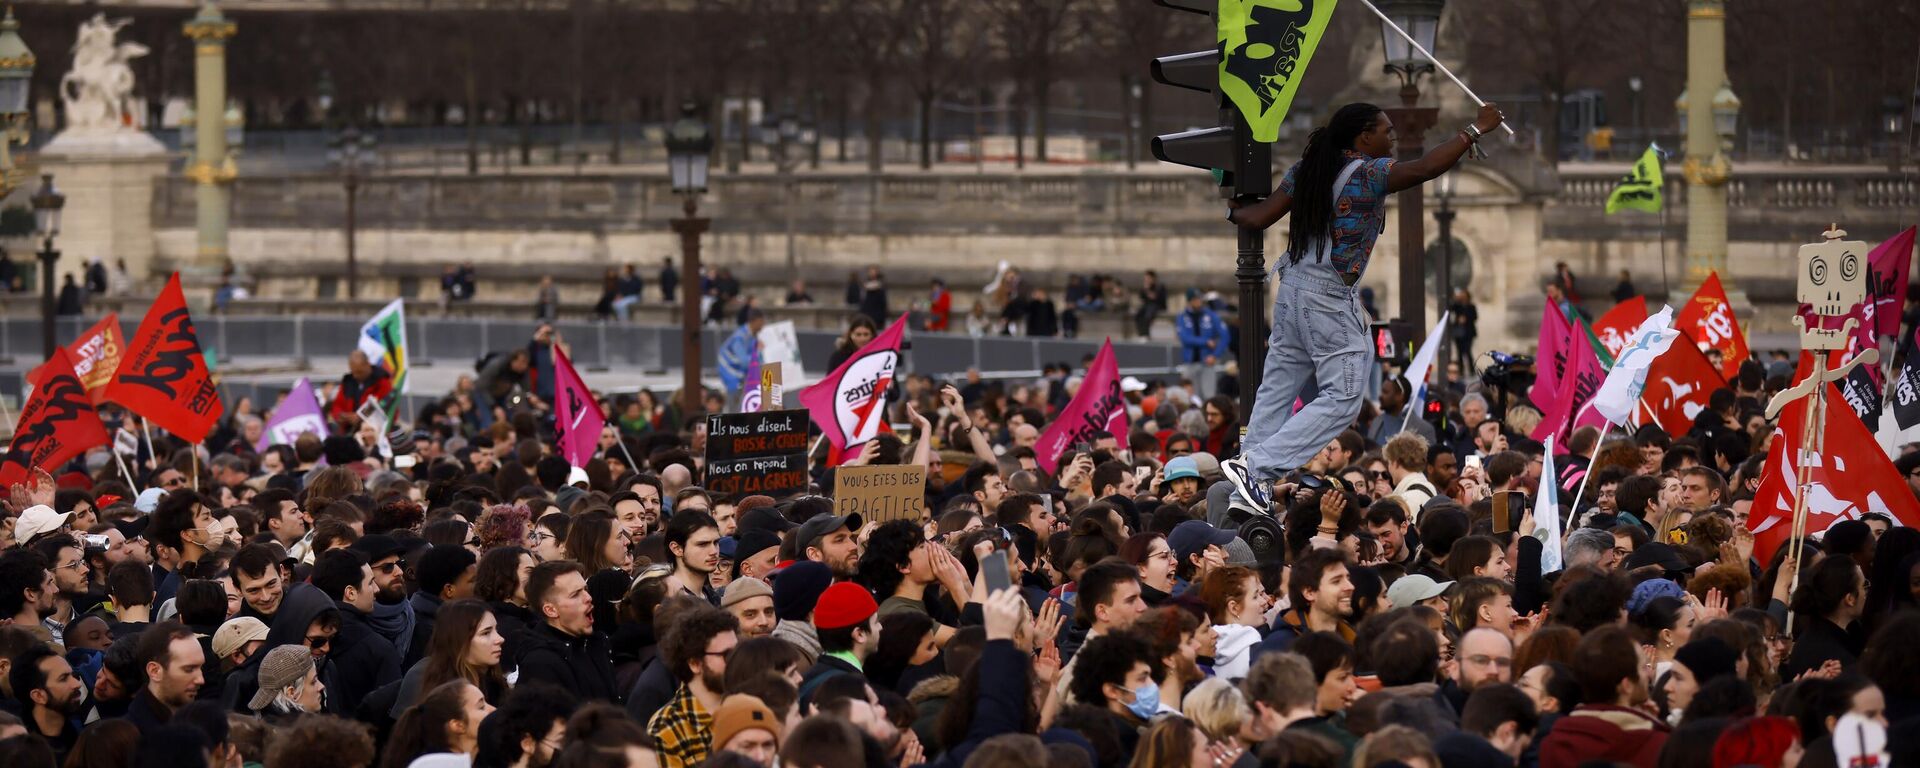 Las protestas en Francia contra el aumento de la edad de jubilación, el 16 de marzo - Sputnik Mundo, 1920, 17.03.2023